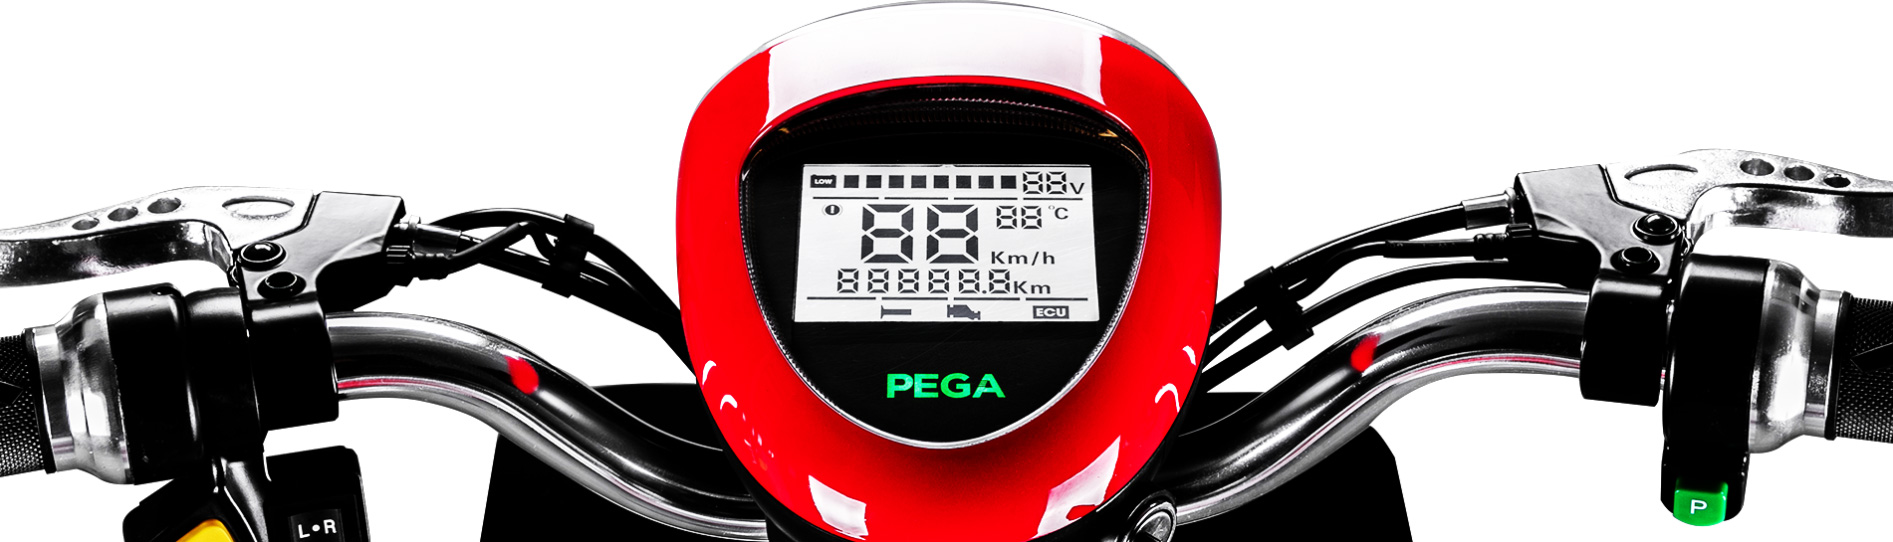 Xe đạp điện Pega Zinger+